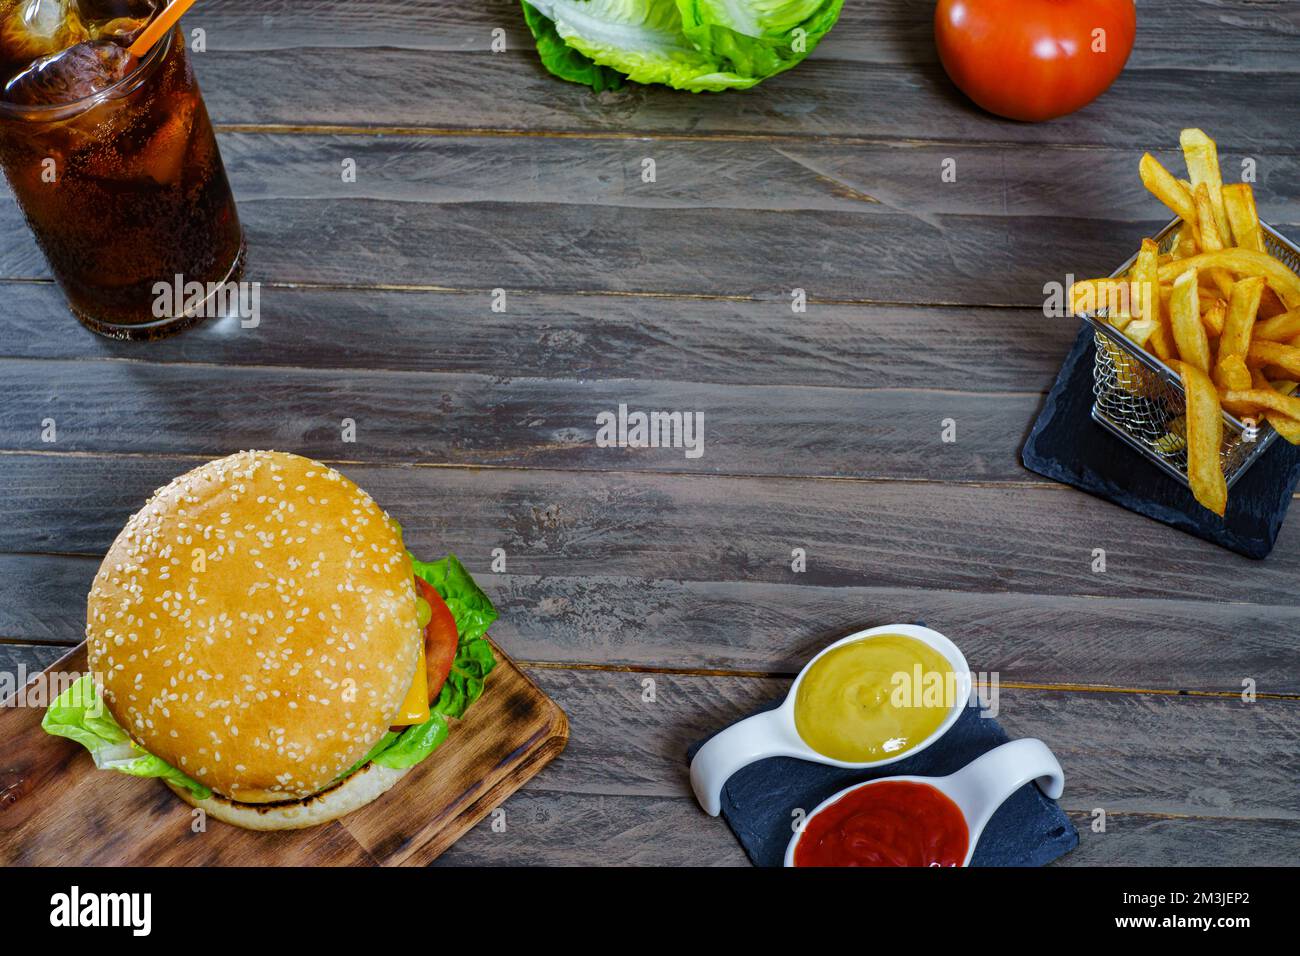 hamburger complet avec deux viandes, sauces, frites et soda au cola. Banque D'Images